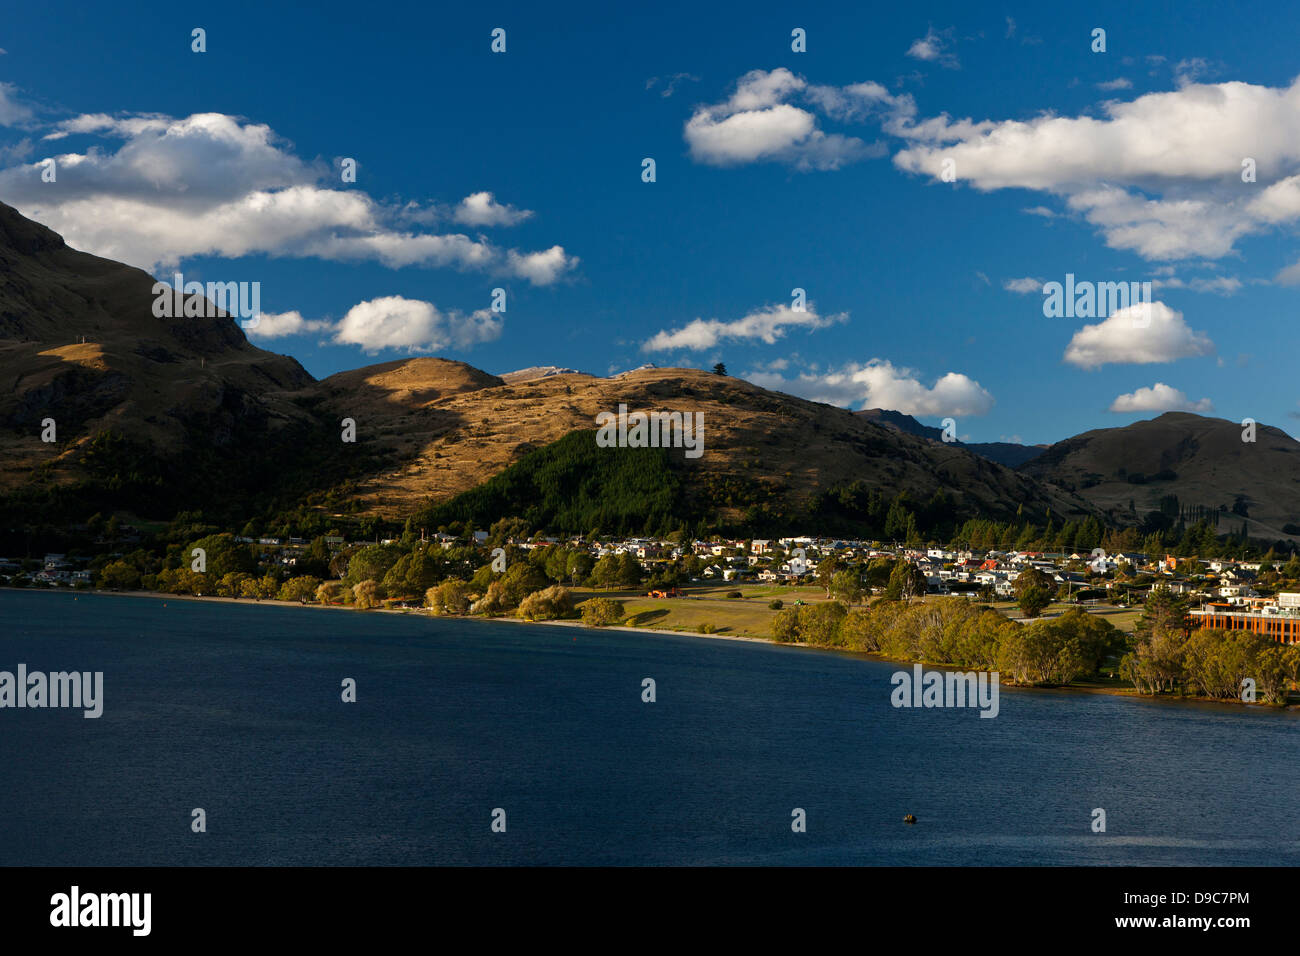 Vue sur les collines entourant le lac Wakatipu, près de Queenstown, Otago, île du Sud, Nouvelle-Zélande Banque D'Images